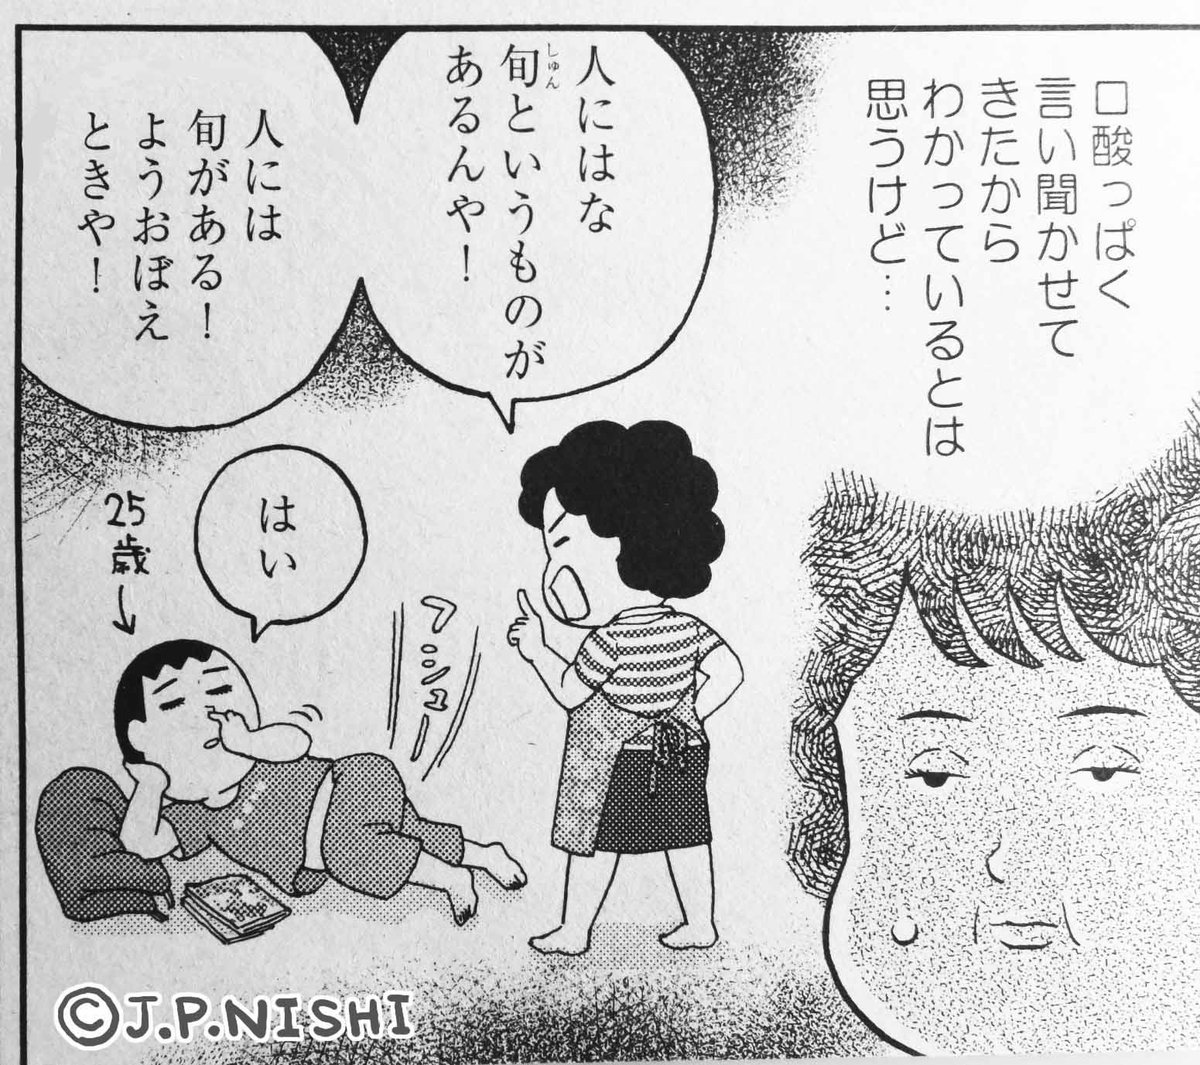 フィール・ヤング https://t.co/m0PRVOTi2B 7月号発売中。「TOKYO異邦人」は40近くになっても結婚しない息子が突然フランス人と結婚することになったとある日本人老夫婦の話。 